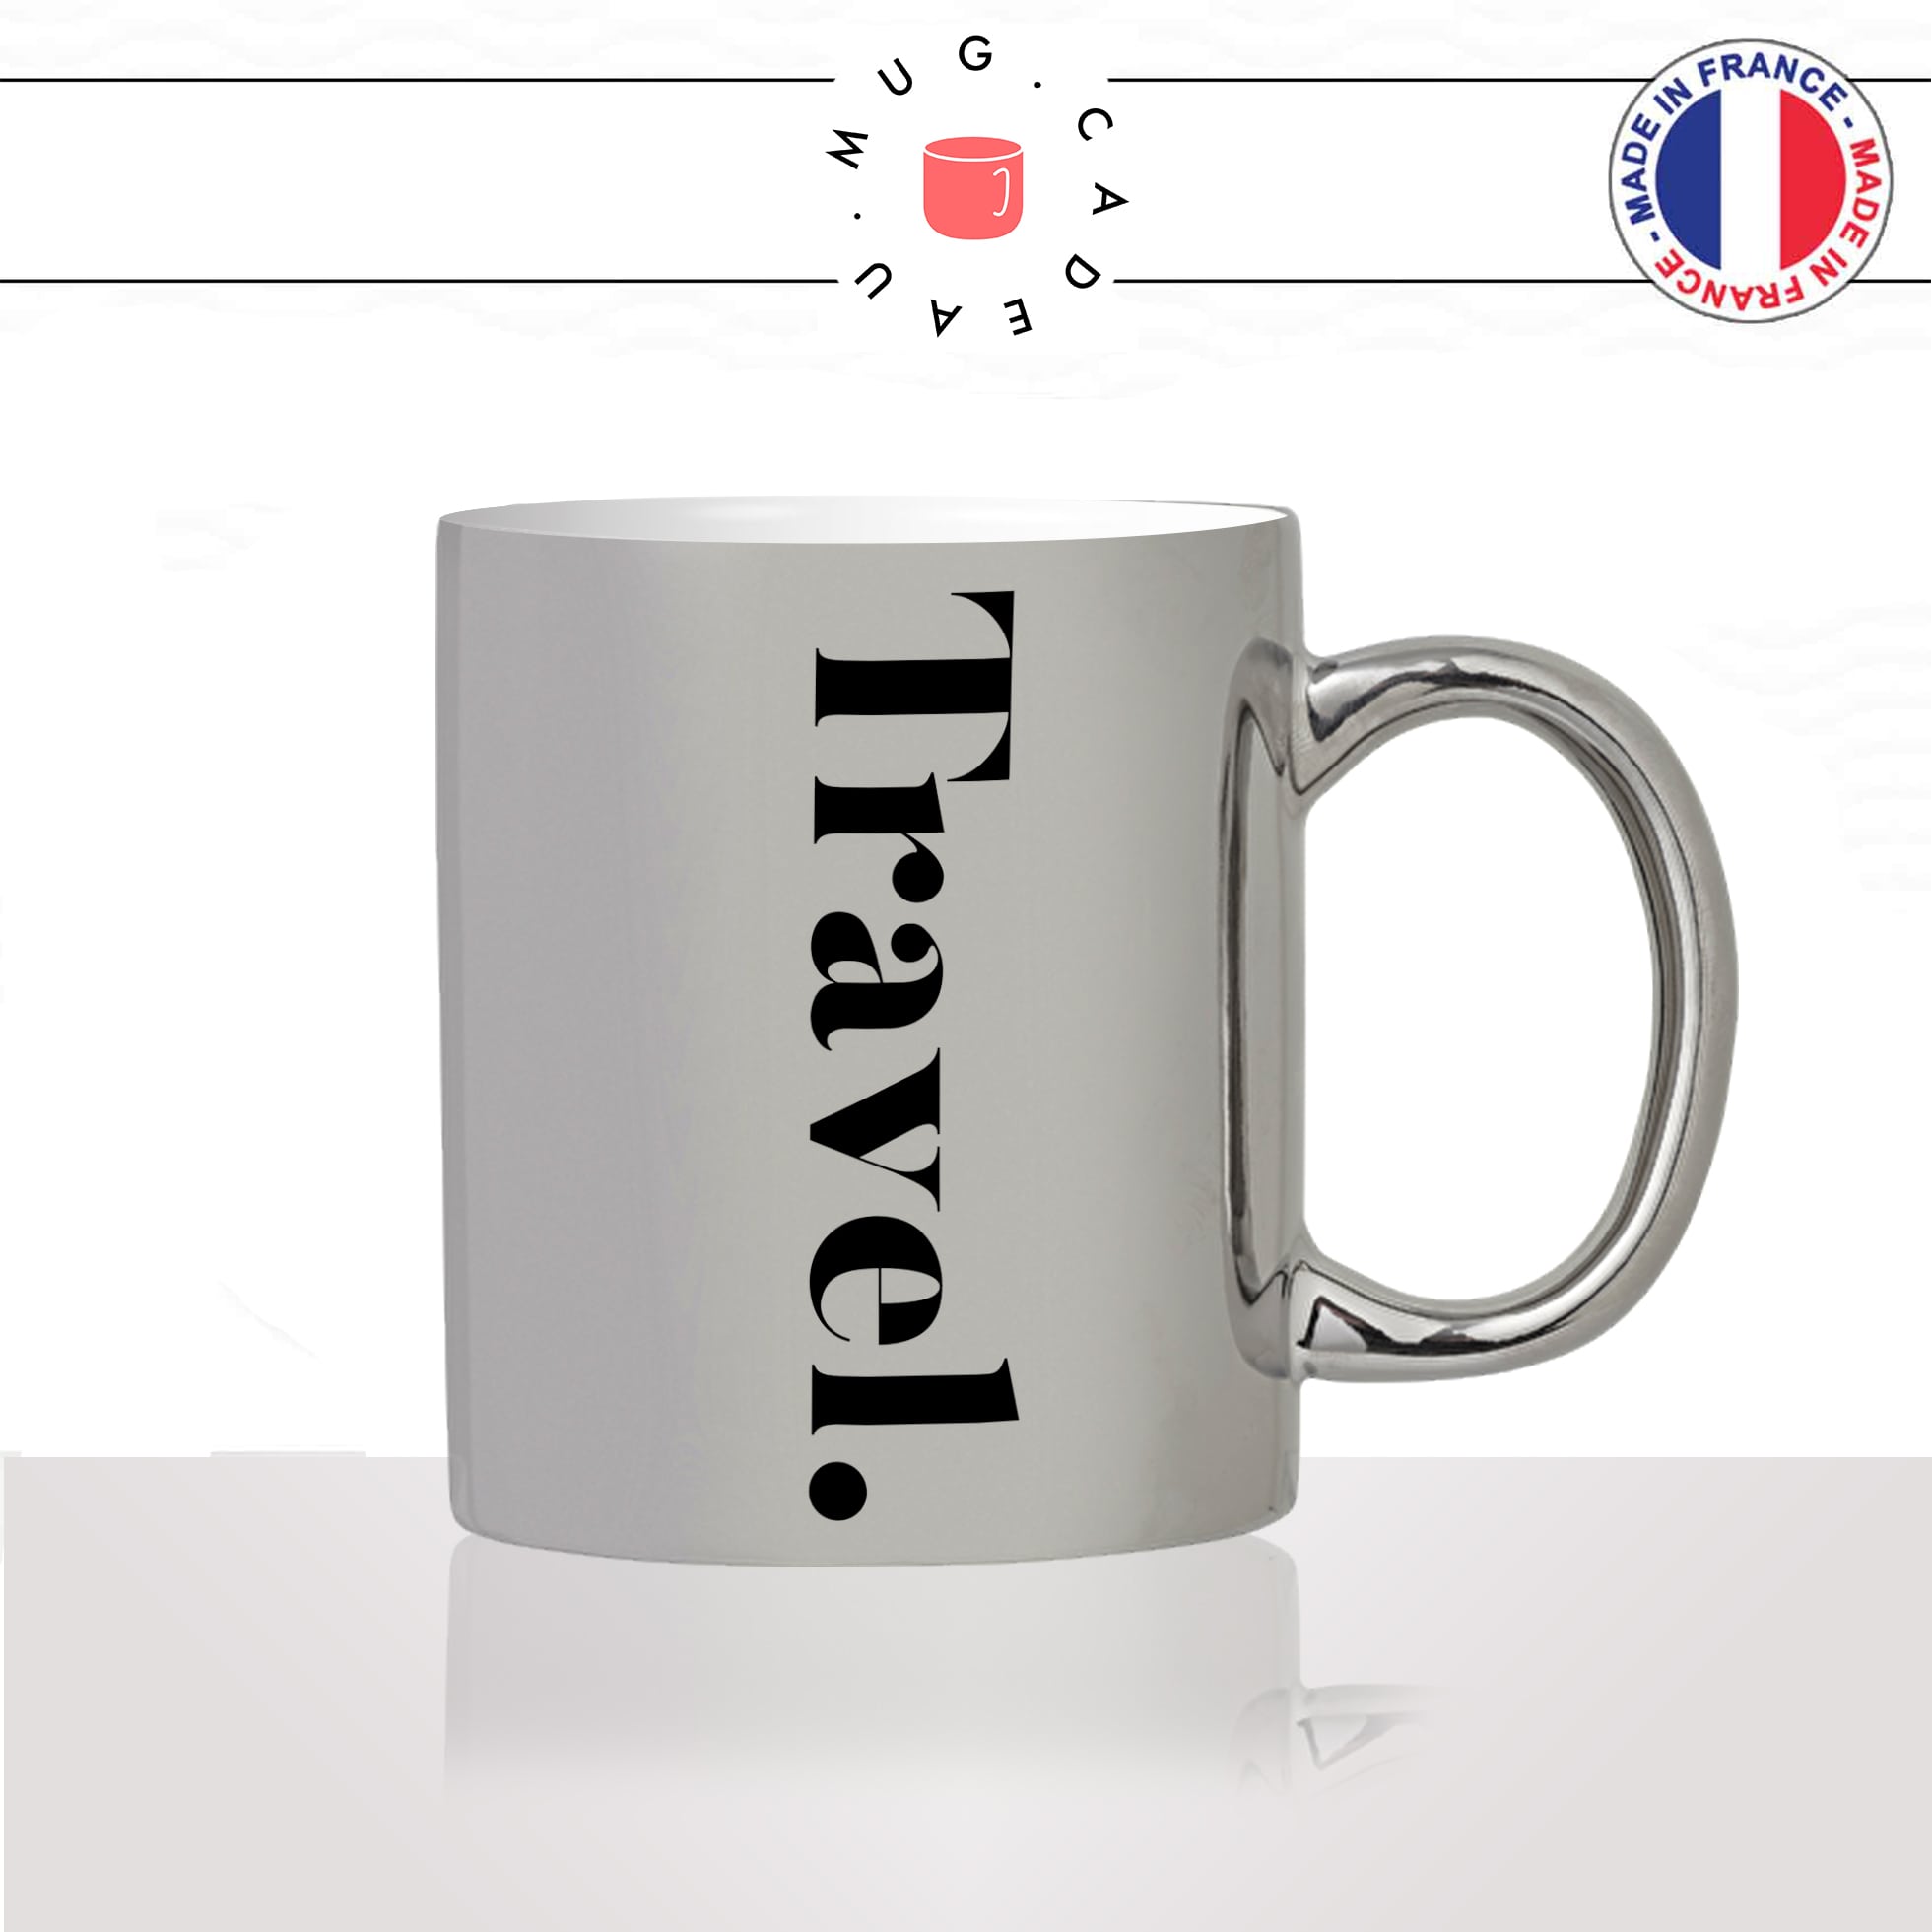 mug-tasse-silver-argenté-travel-voyage-calligraphie-lettrine-mot-anglais-collegue-décoration-amie-idée-cadeau-original-personnalisé-café-thé2-min